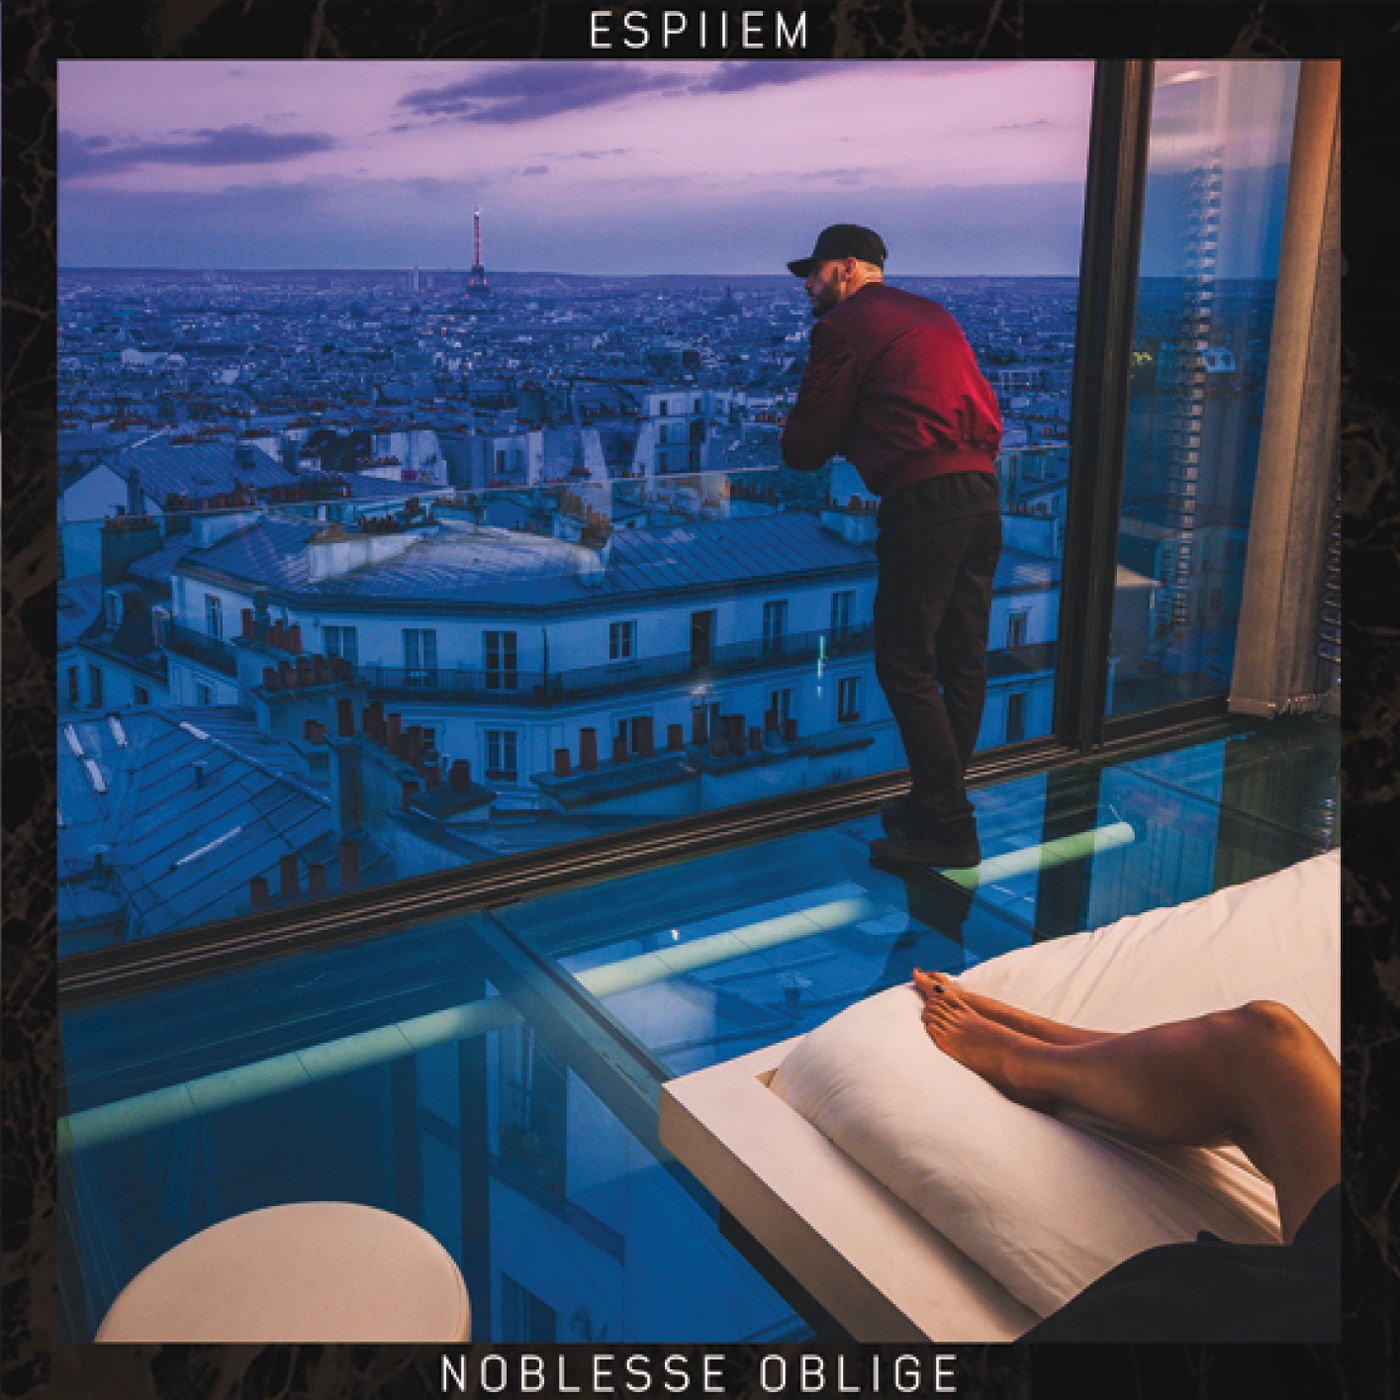 Espiiem - Noblesse Oblige (Orfevre LabelMusicast)